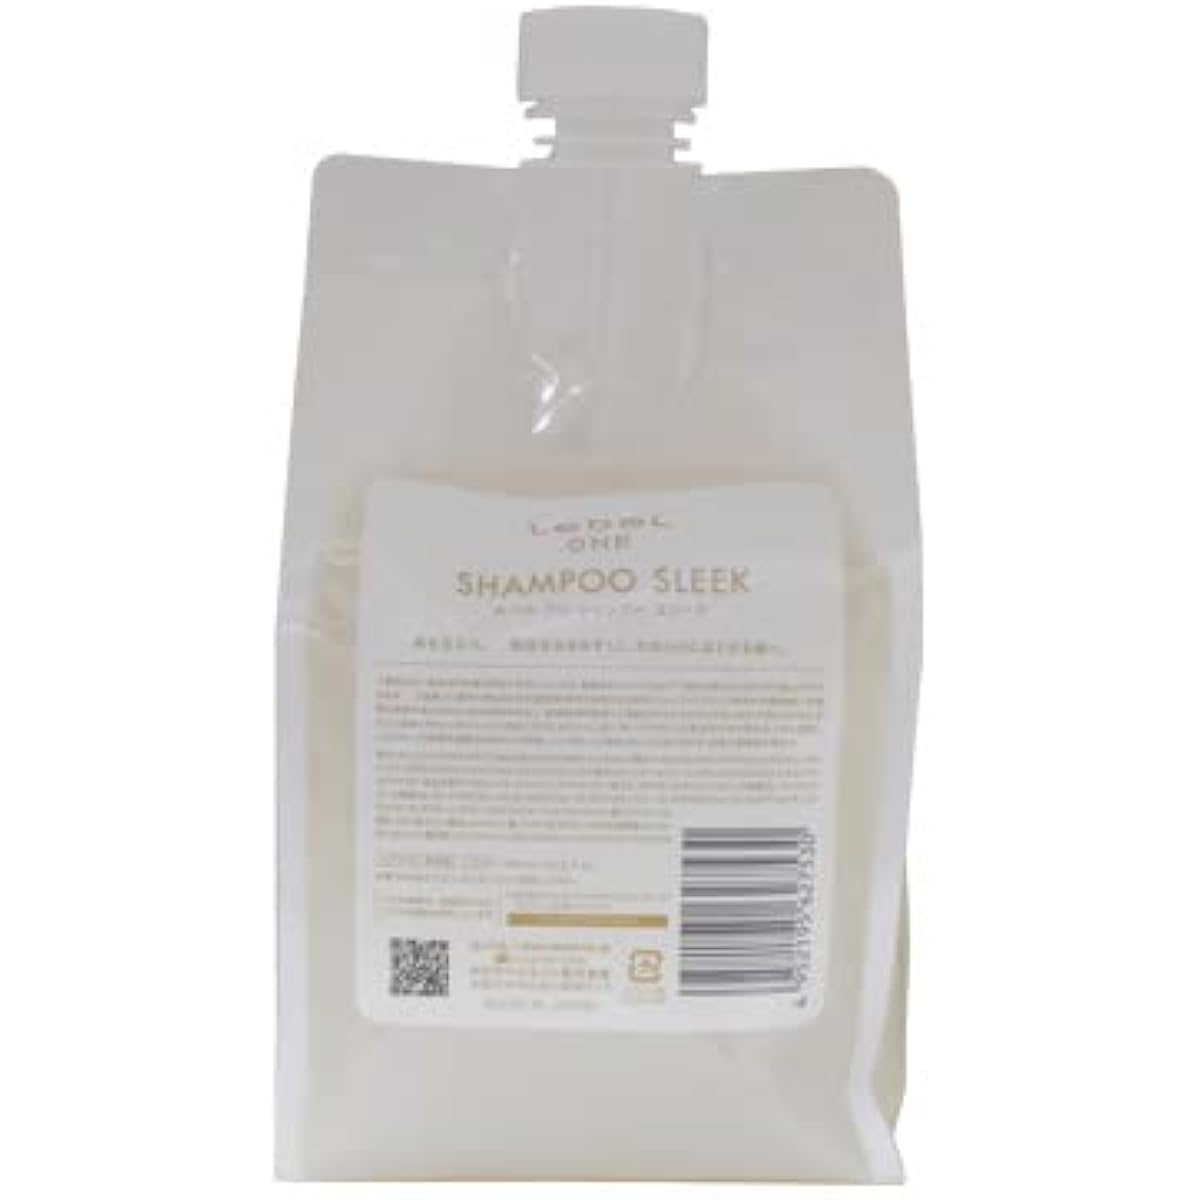 Lebel One Shampoo Sleek 1000mL (pouch)